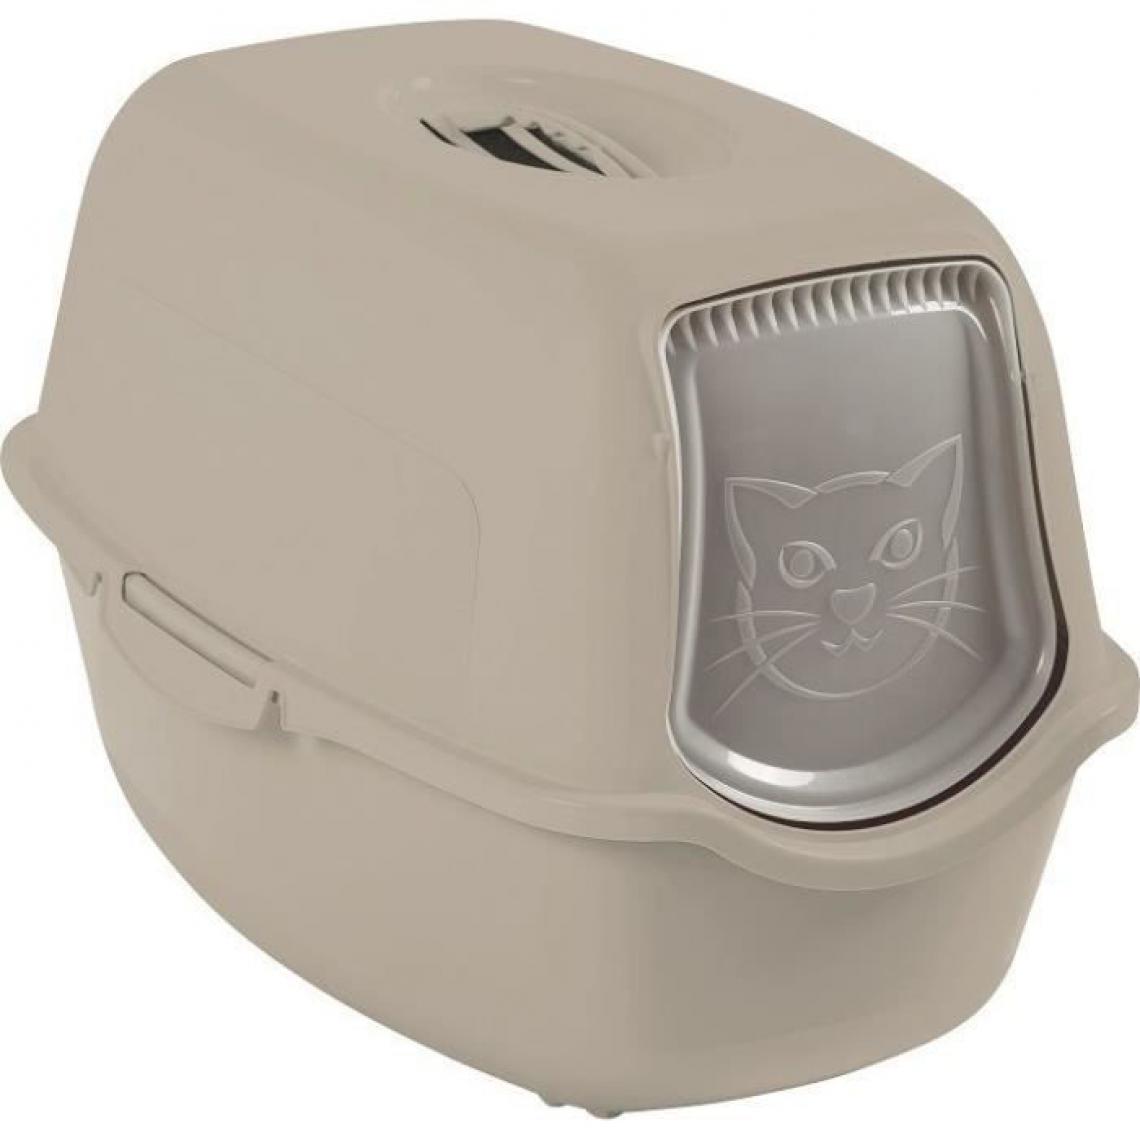 Cstore - Maison de toilette - Cappuccino (PP Recyclé) - 56 x 40 x 39 cm - Litière pour chat